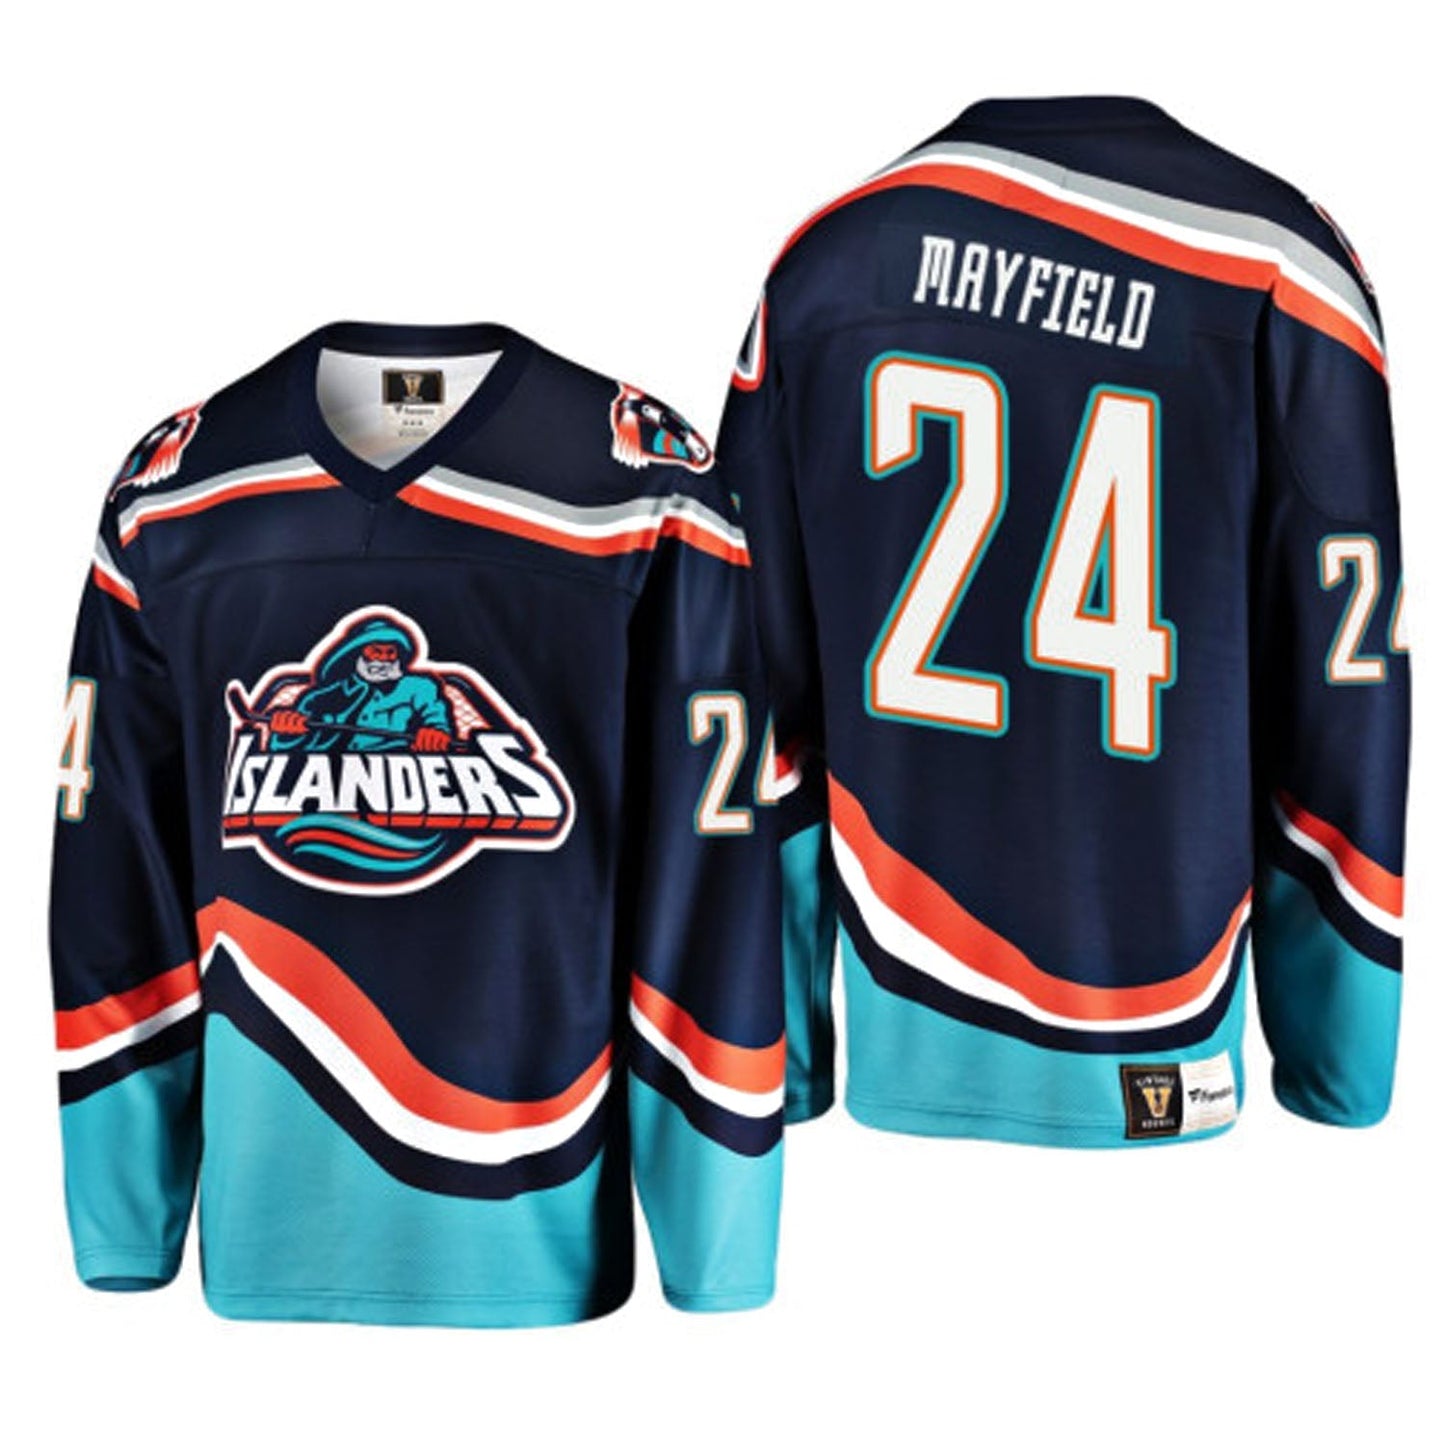 NHL Scott Mayfield New York Islanders 24 Jersey